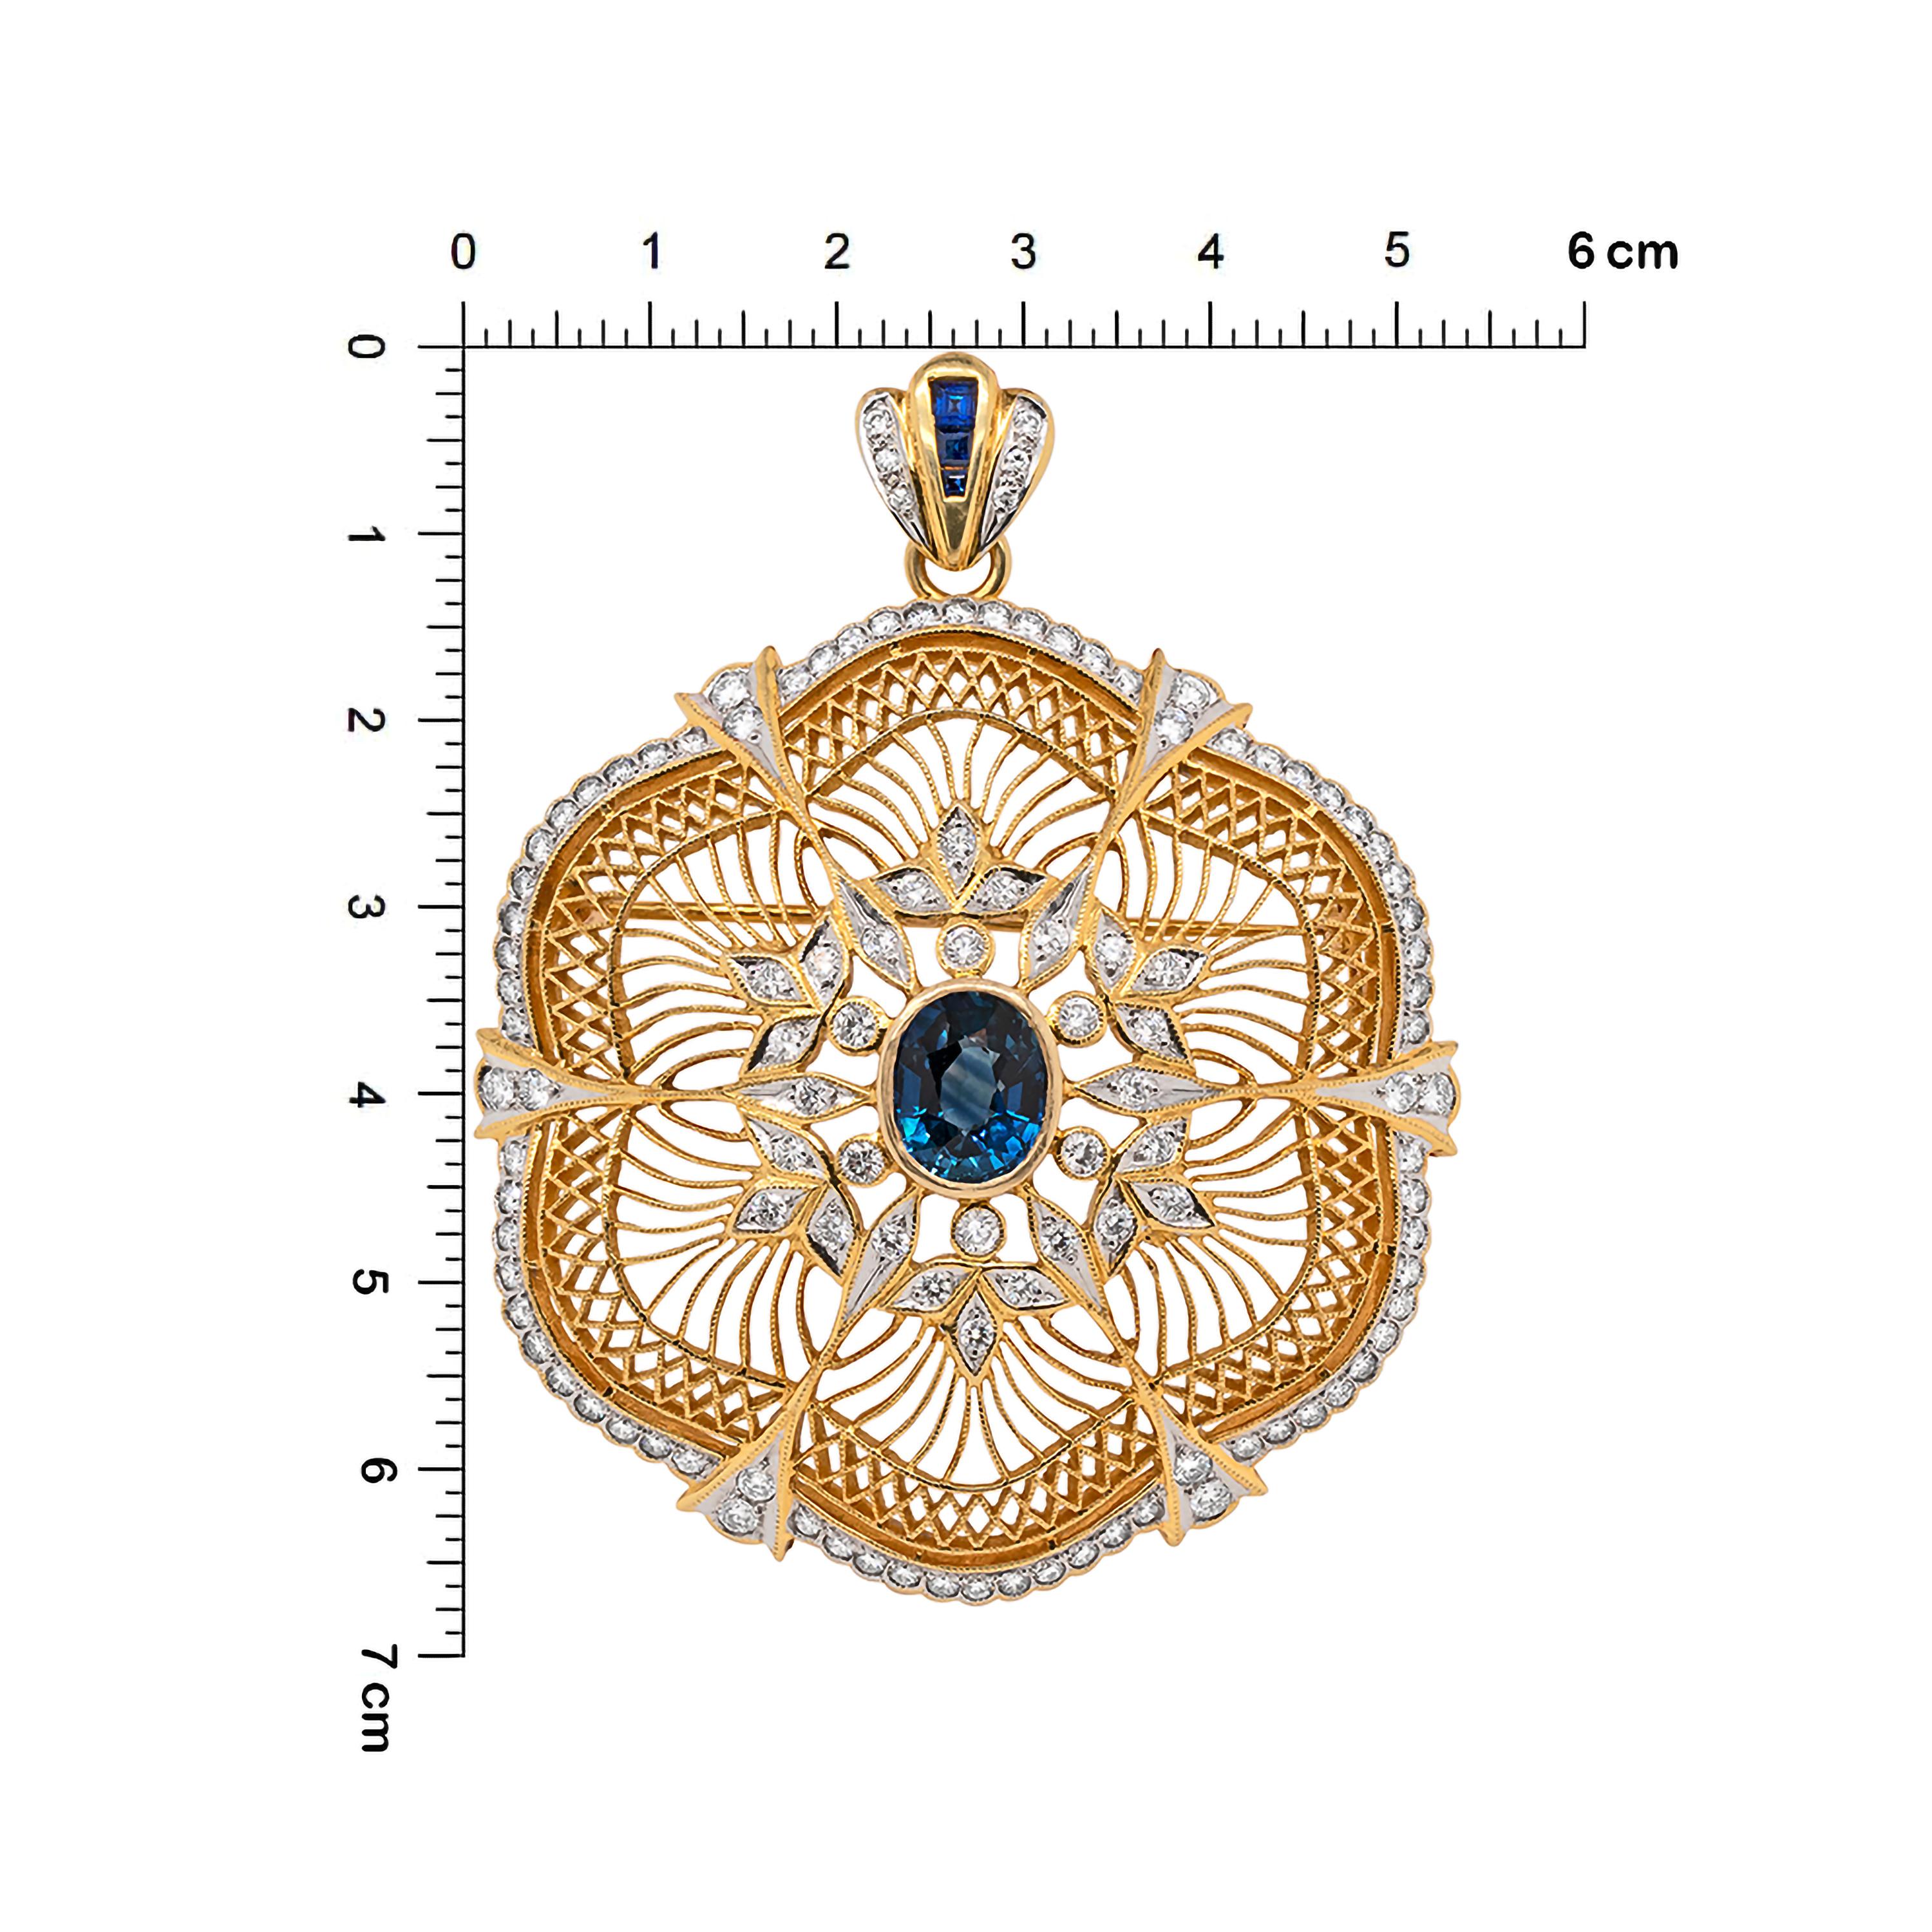 Diese unglaublich detaillierte durchbrochene florale Brosche/Anhänger zeigt einen tiefblauen ovalen Saphir mit einem geschätzten Gewicht von 4,00ct, der zentral in einer offenen Fassung mit Reibung sitzt. Der Saphir ist von floralen Verzierungen